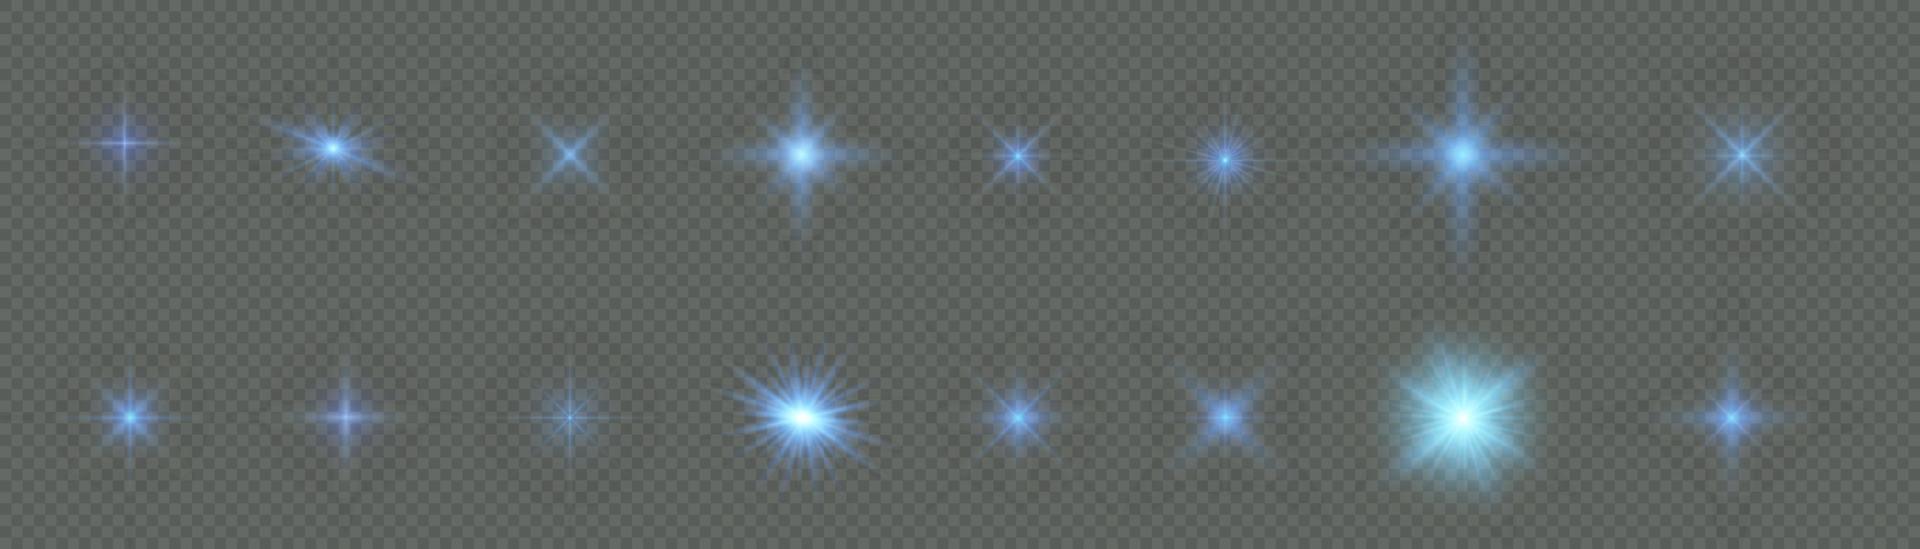 conjunto de efectos de luz transparente blanca aislada brillante, destello de lente, explosión, brillo, línea, destello solar, chispa y estrellas. diseño abstracto de elementos de efectos especiales. rayo de brillo con relámpago vector